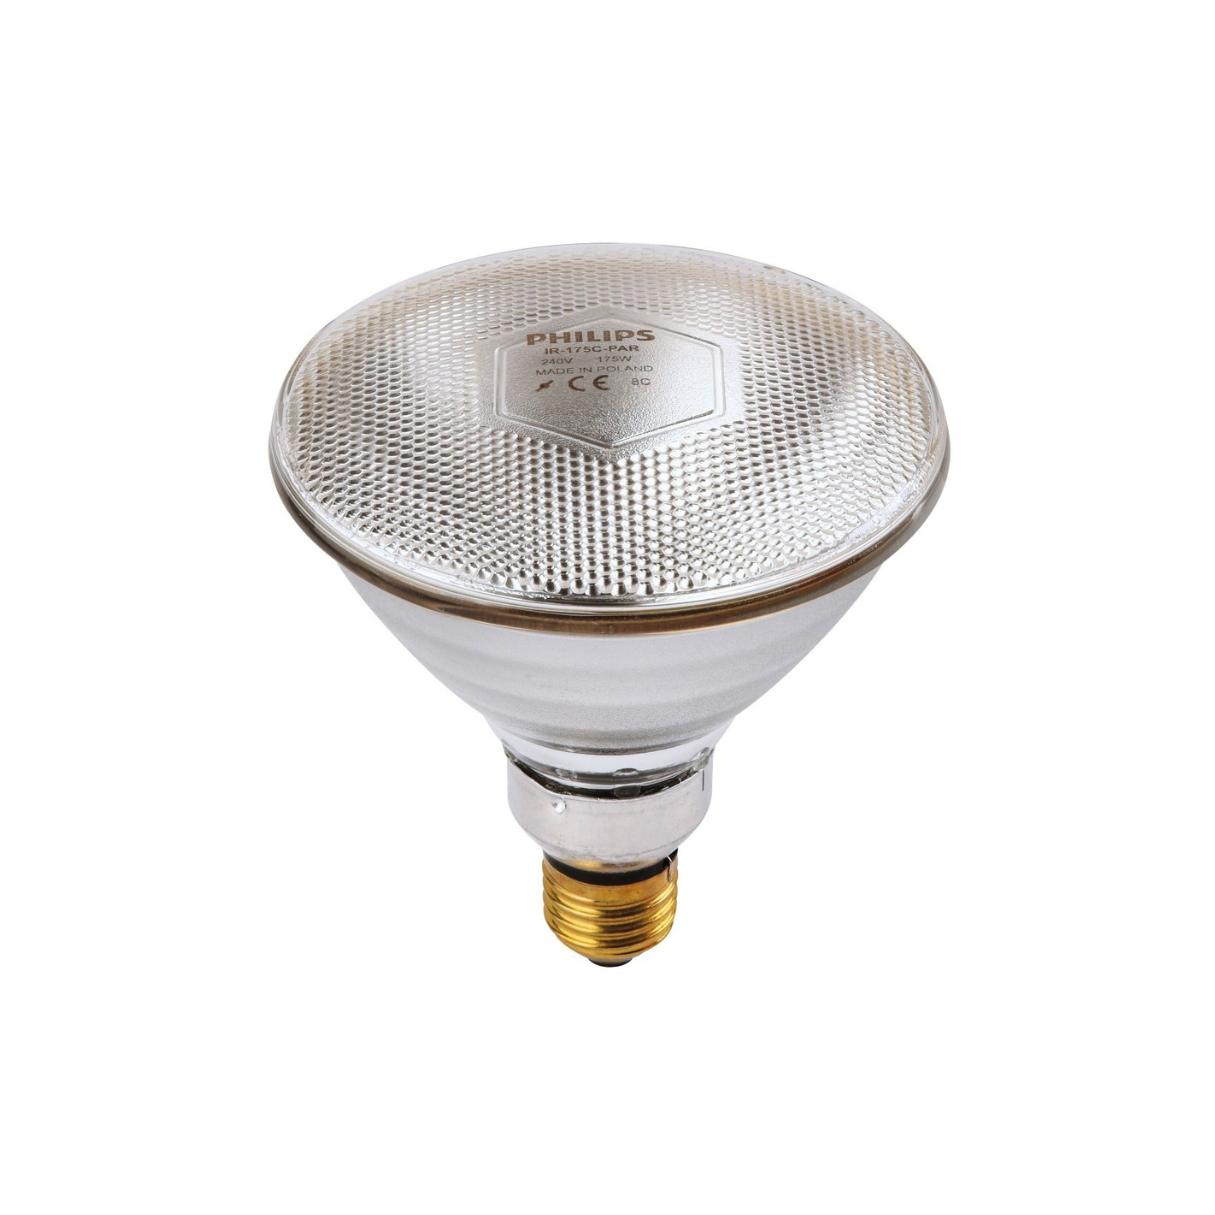 What Is A PAR Light Bulb